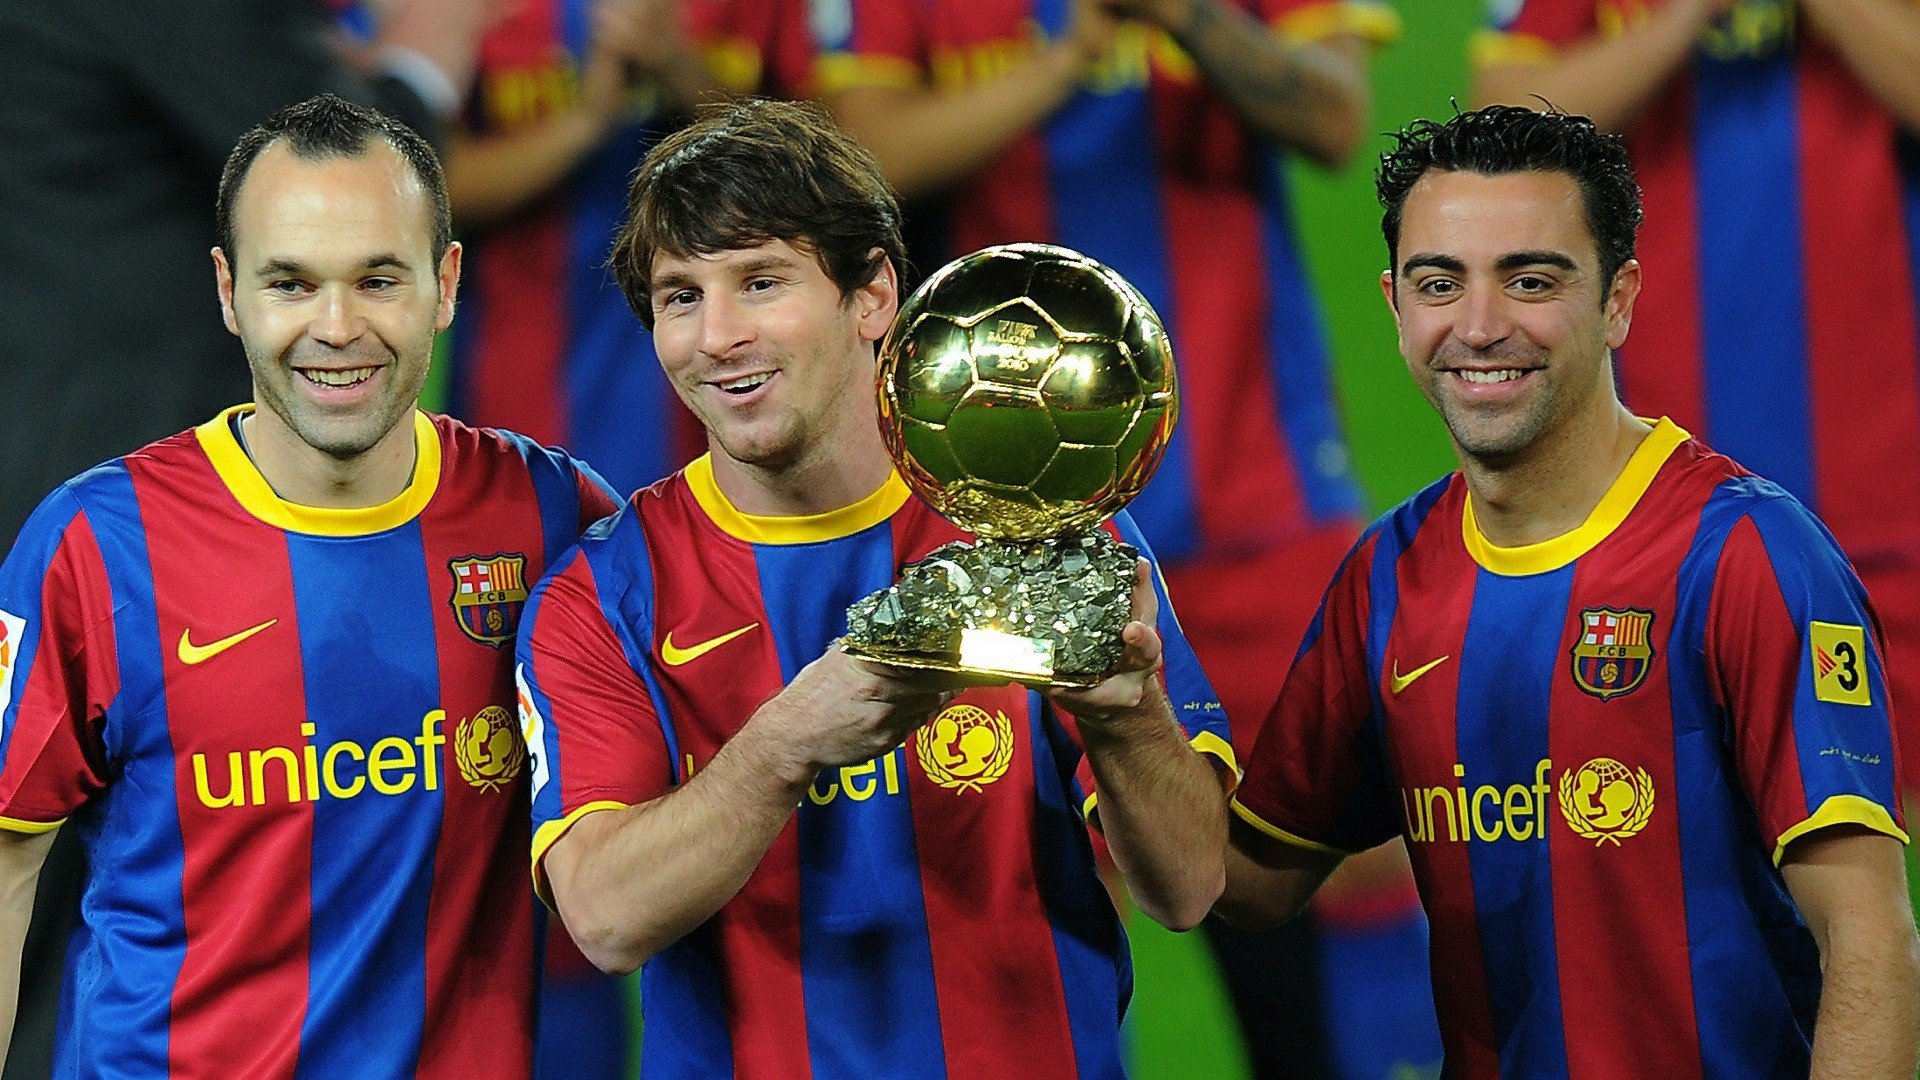 Hãy khám phá bức ảnh nền sặc sỡ này với hình ảnh của ba ngôi sao bóng đá Barca: Messi, Xavi và Iniesta! Chắc chắn bạn sẽ bị choáng ngợp bởi sự uyển chuyển của họ trên sân cỏ và sự thần thái trong mỗi khoảnh khắc của họ.